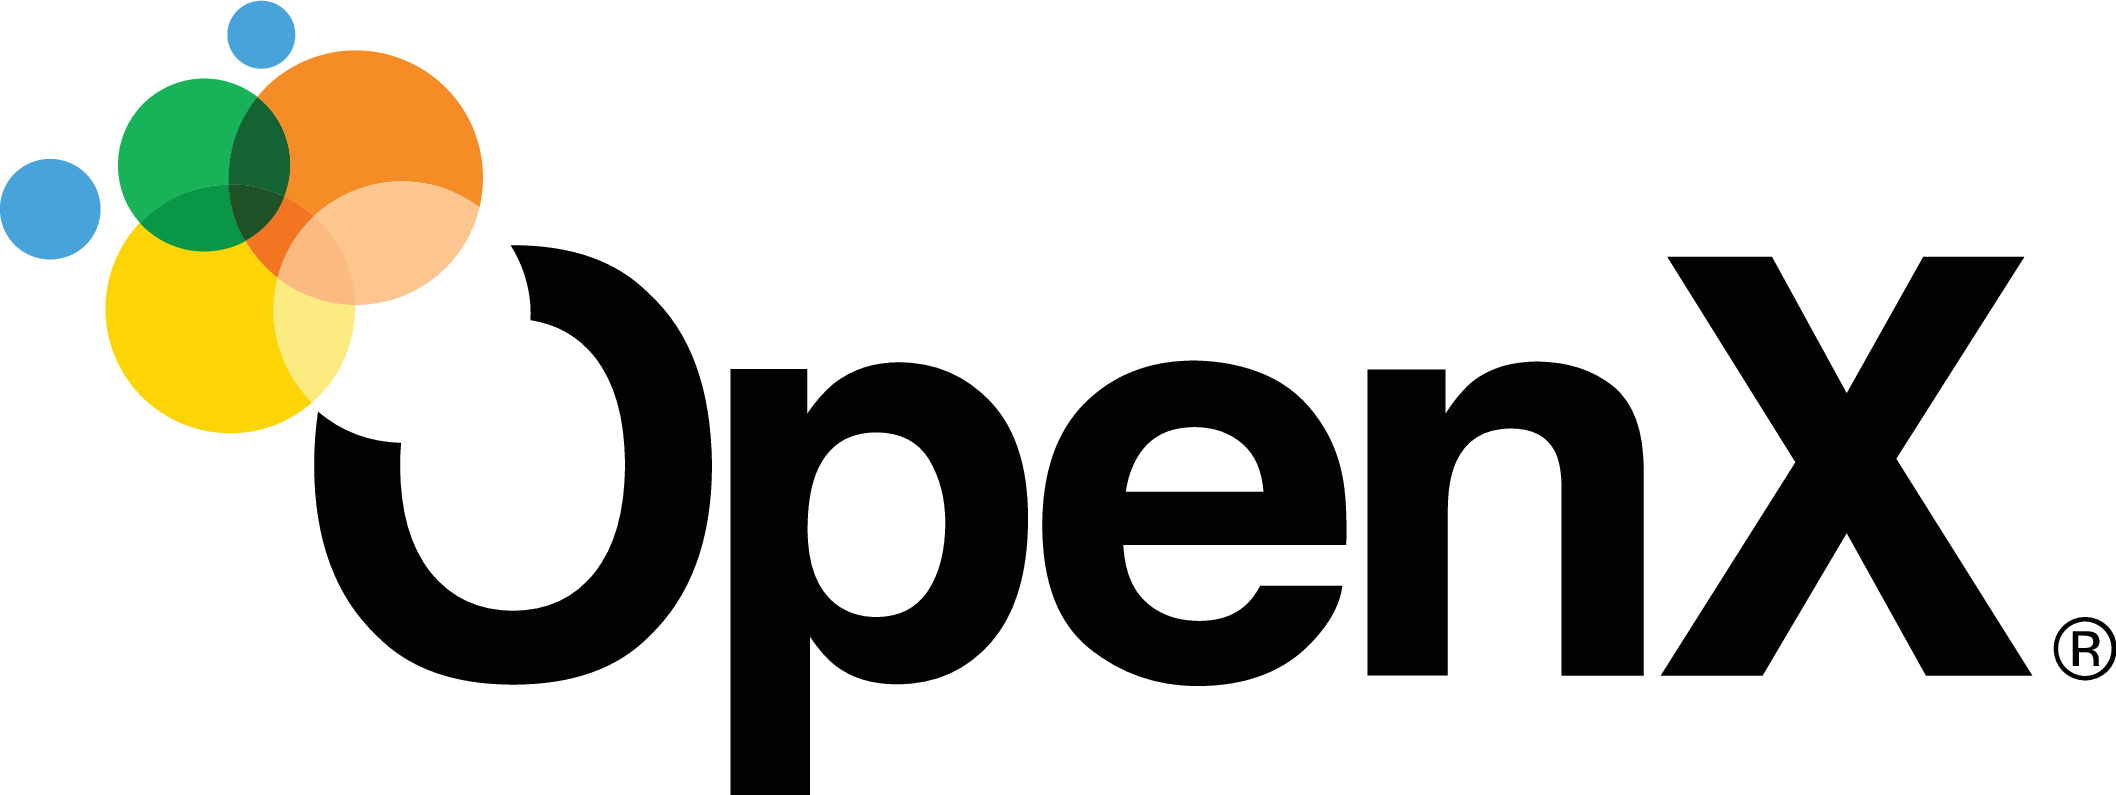 Logo: OpenX